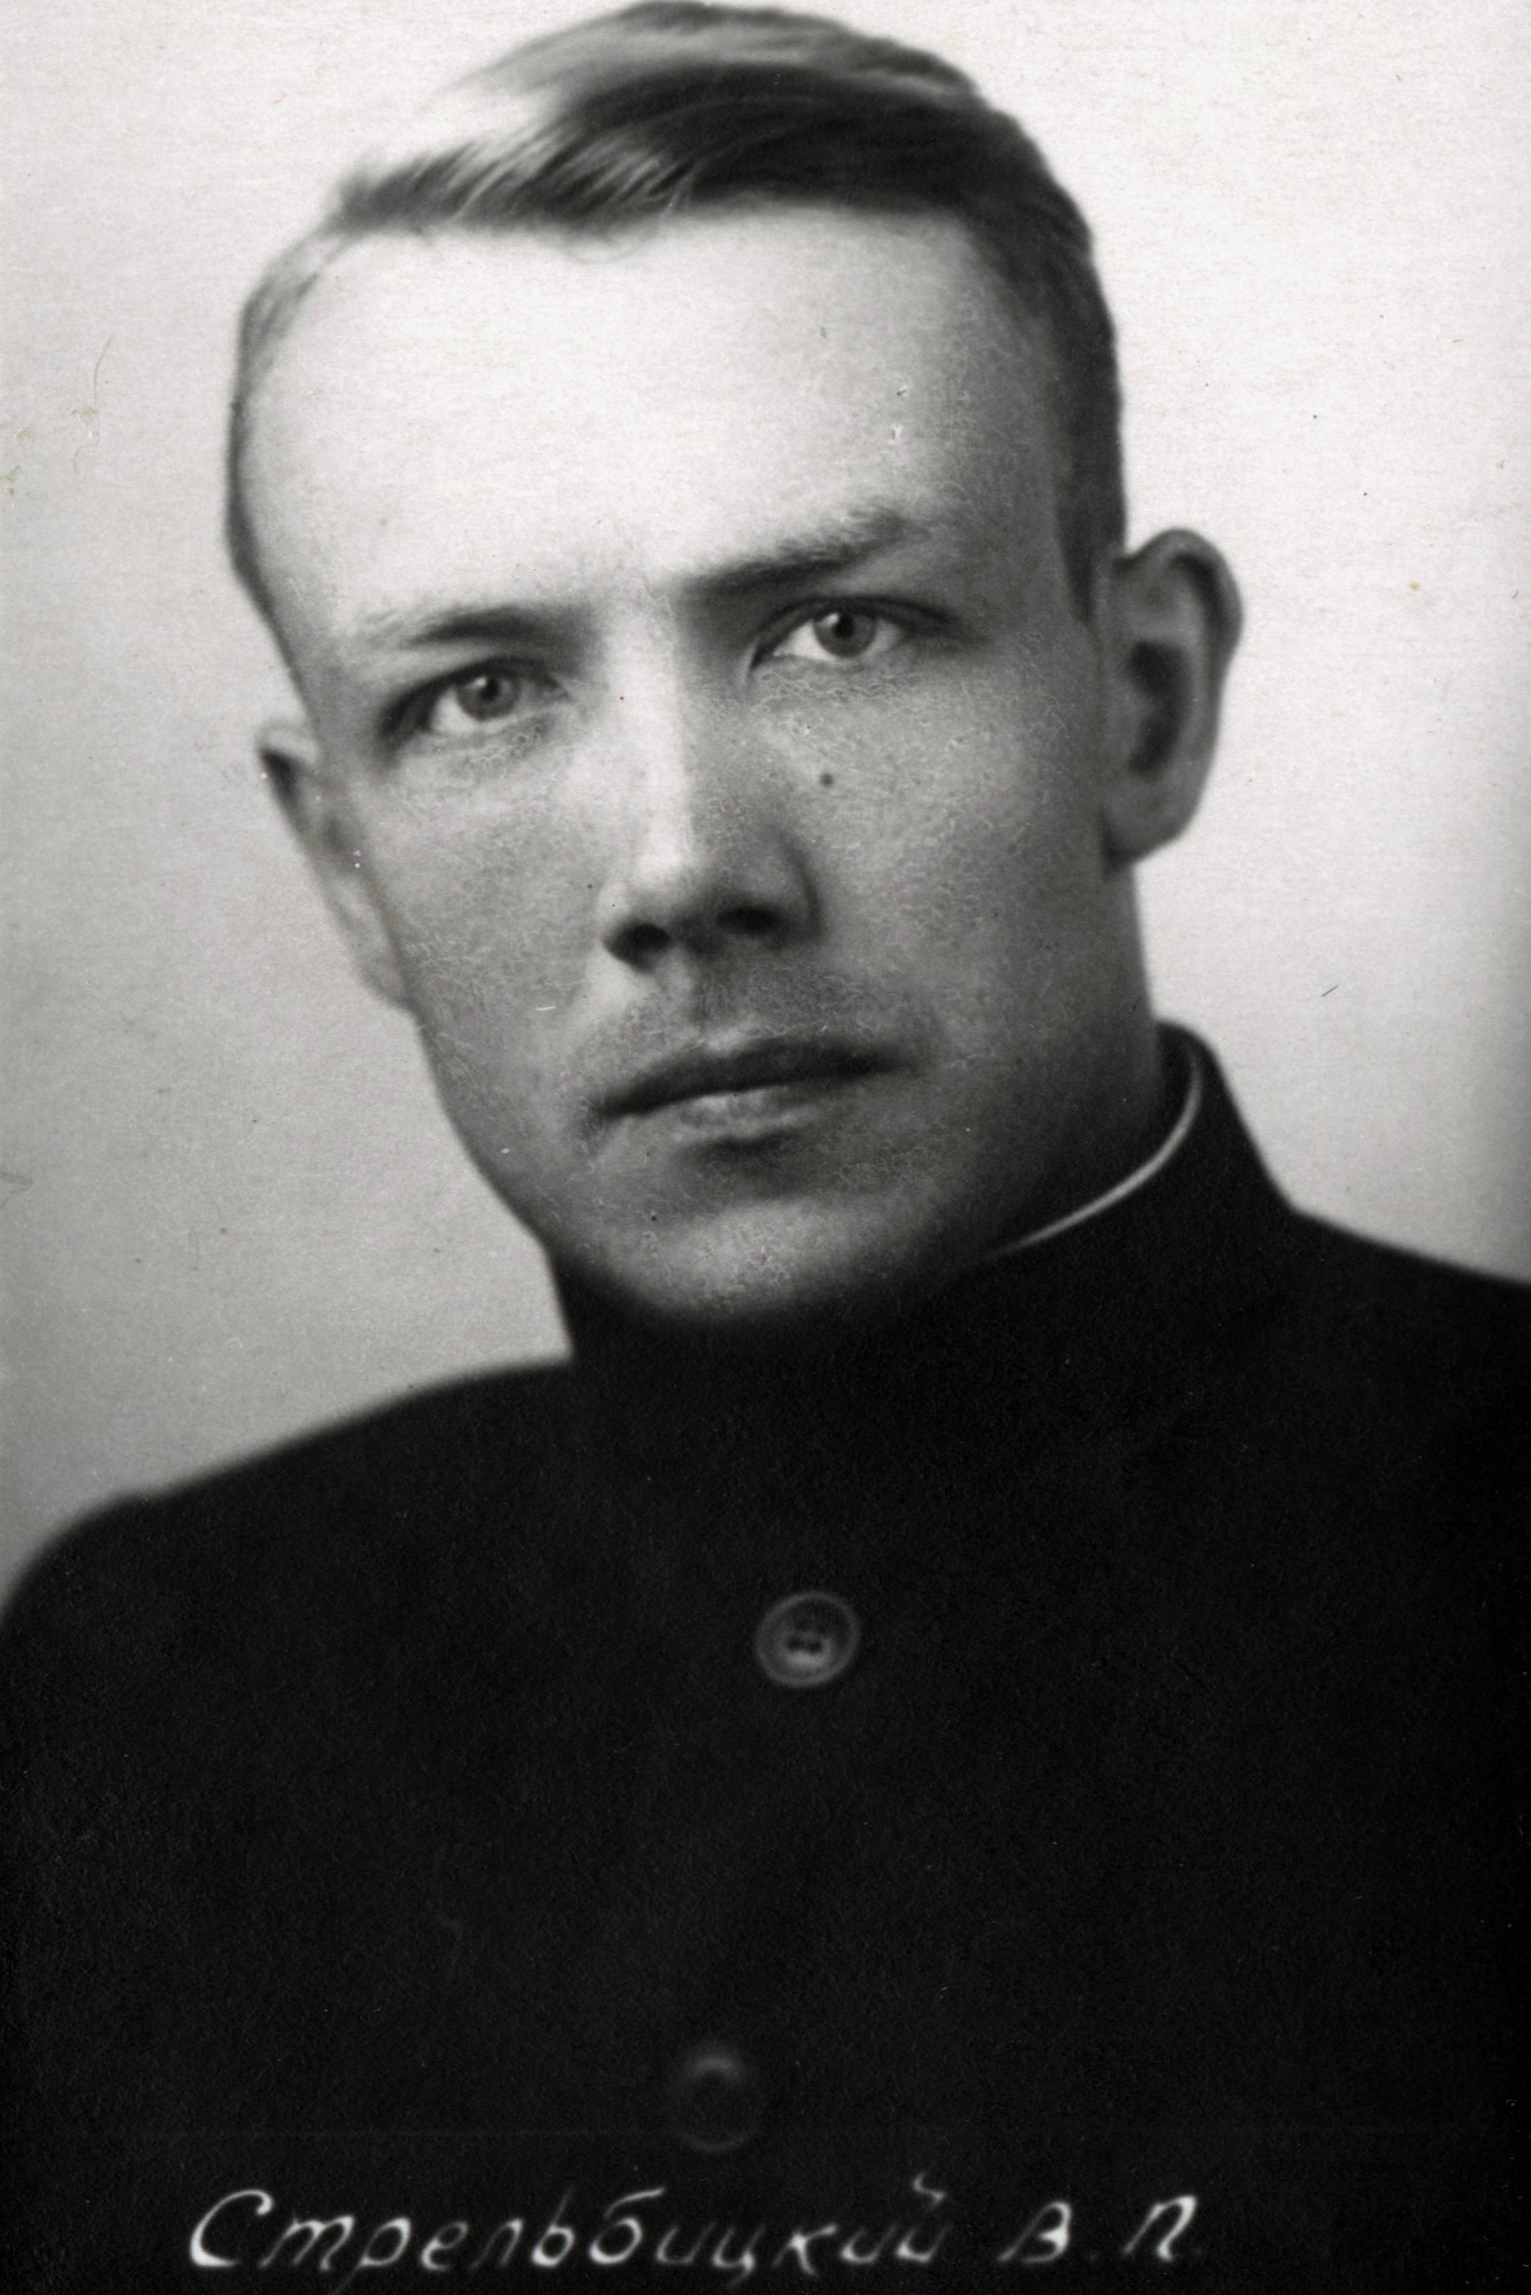 Стрельбицкий Вадим Петрович, протоиерей (1927 — 2012)